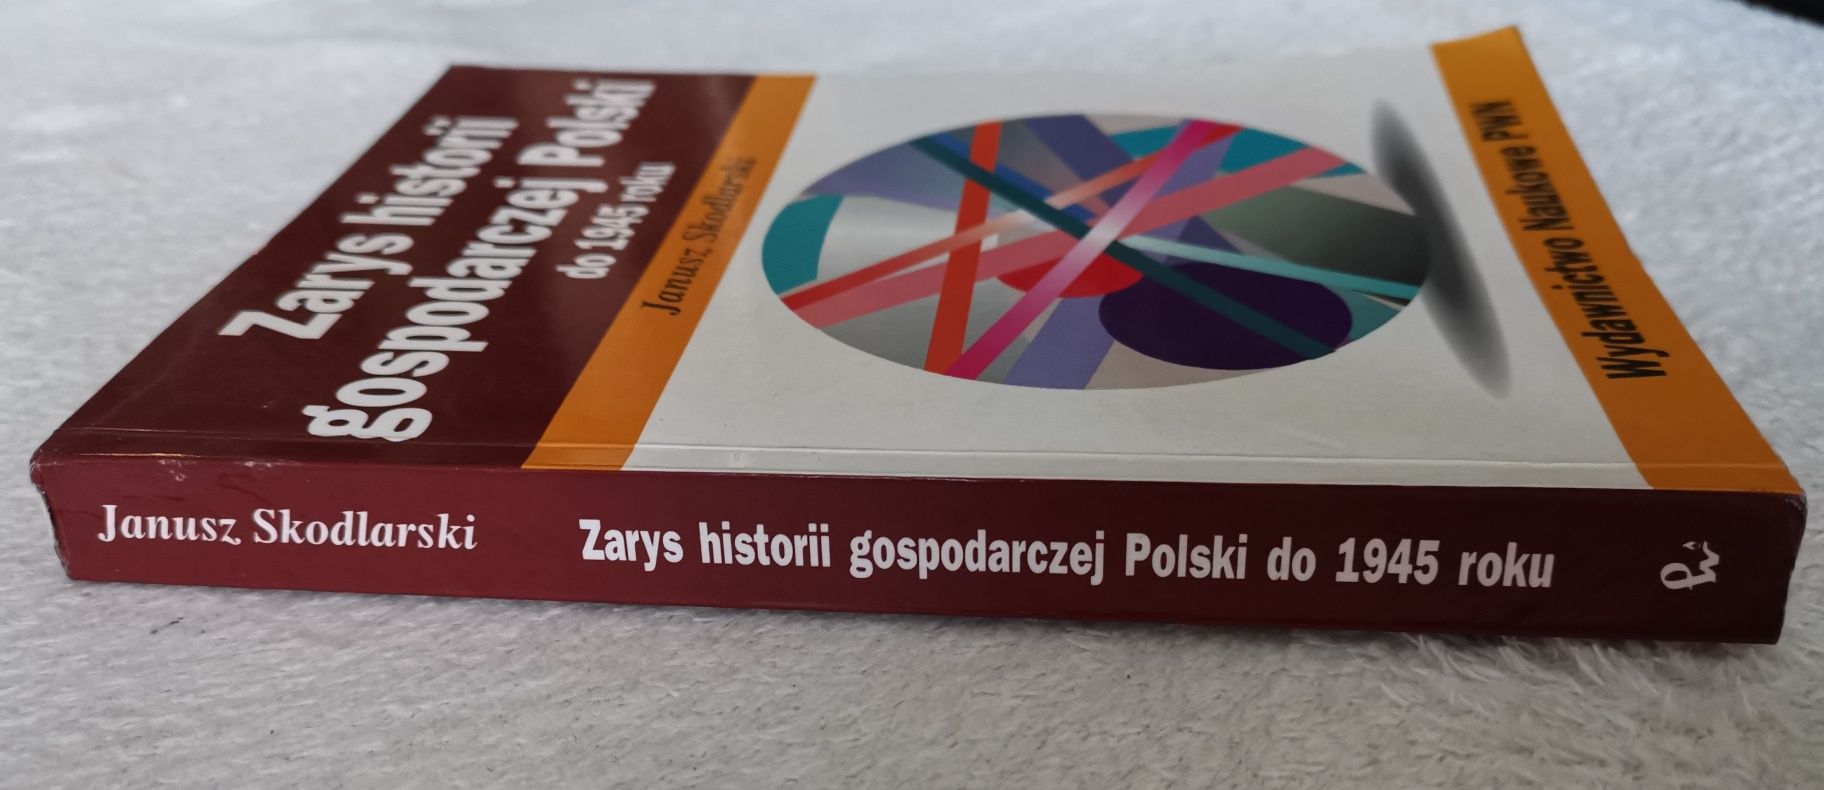 Zarys historii gospodarczej Polski od 1945 roku